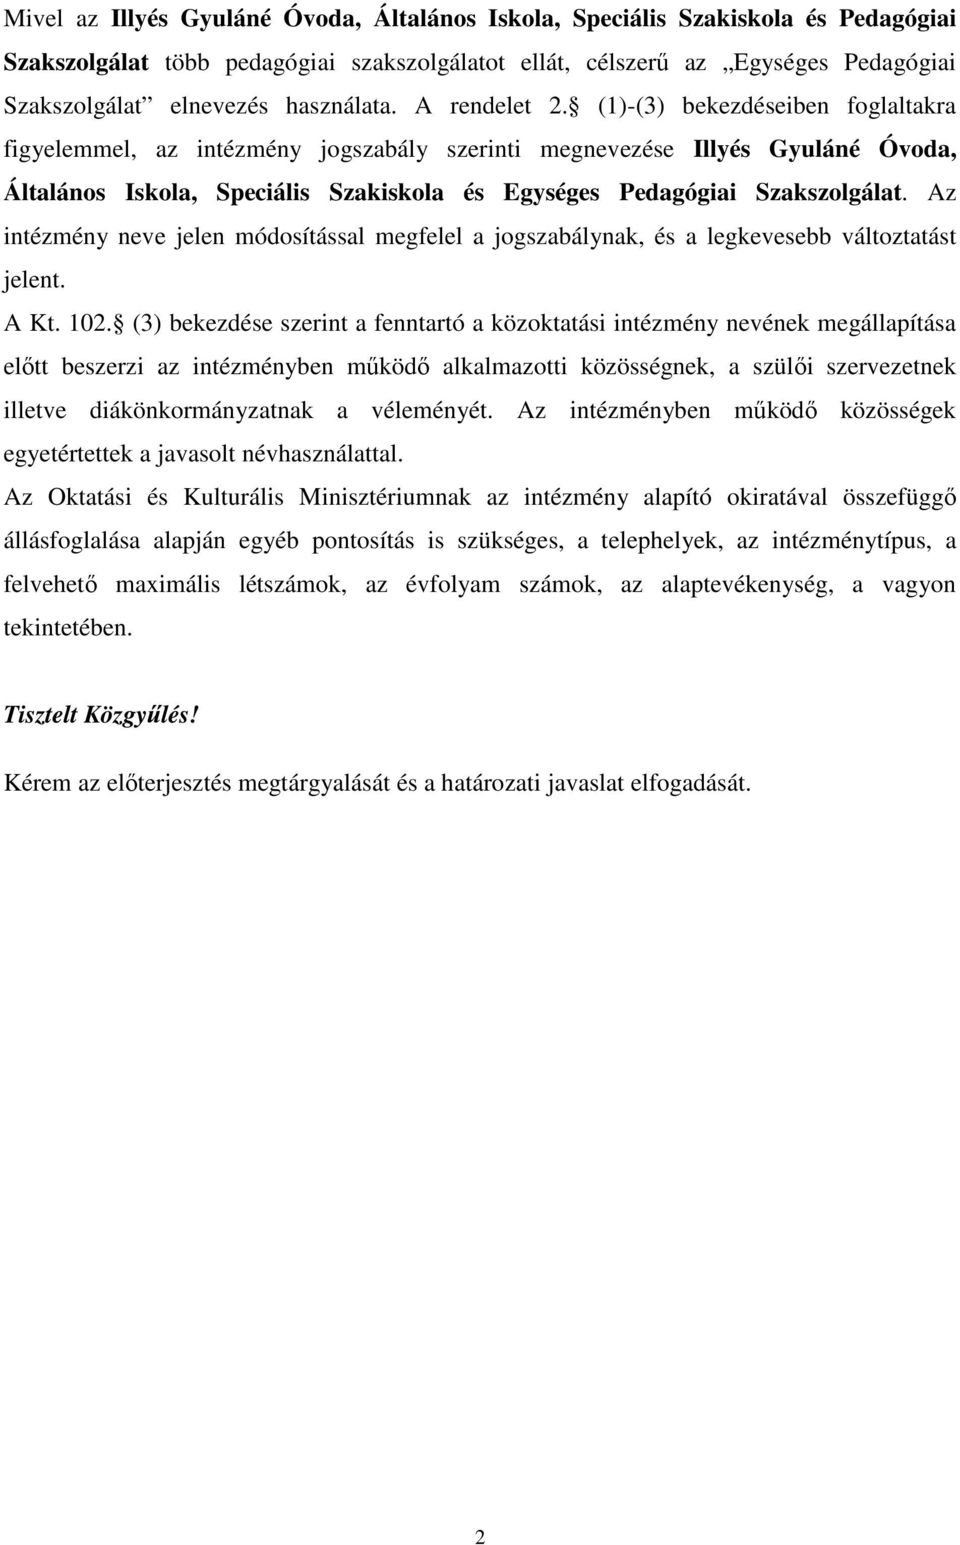 (1)-(3) bekezdéseiben foglaltakra figyelemmel, az intézmény jogszabály szerinti megnevezése Illyés Gyuláné Óvoda, Általános Iskola, Speciális Szakiskola és Egységes Pedagógiai Szakszolgálat.